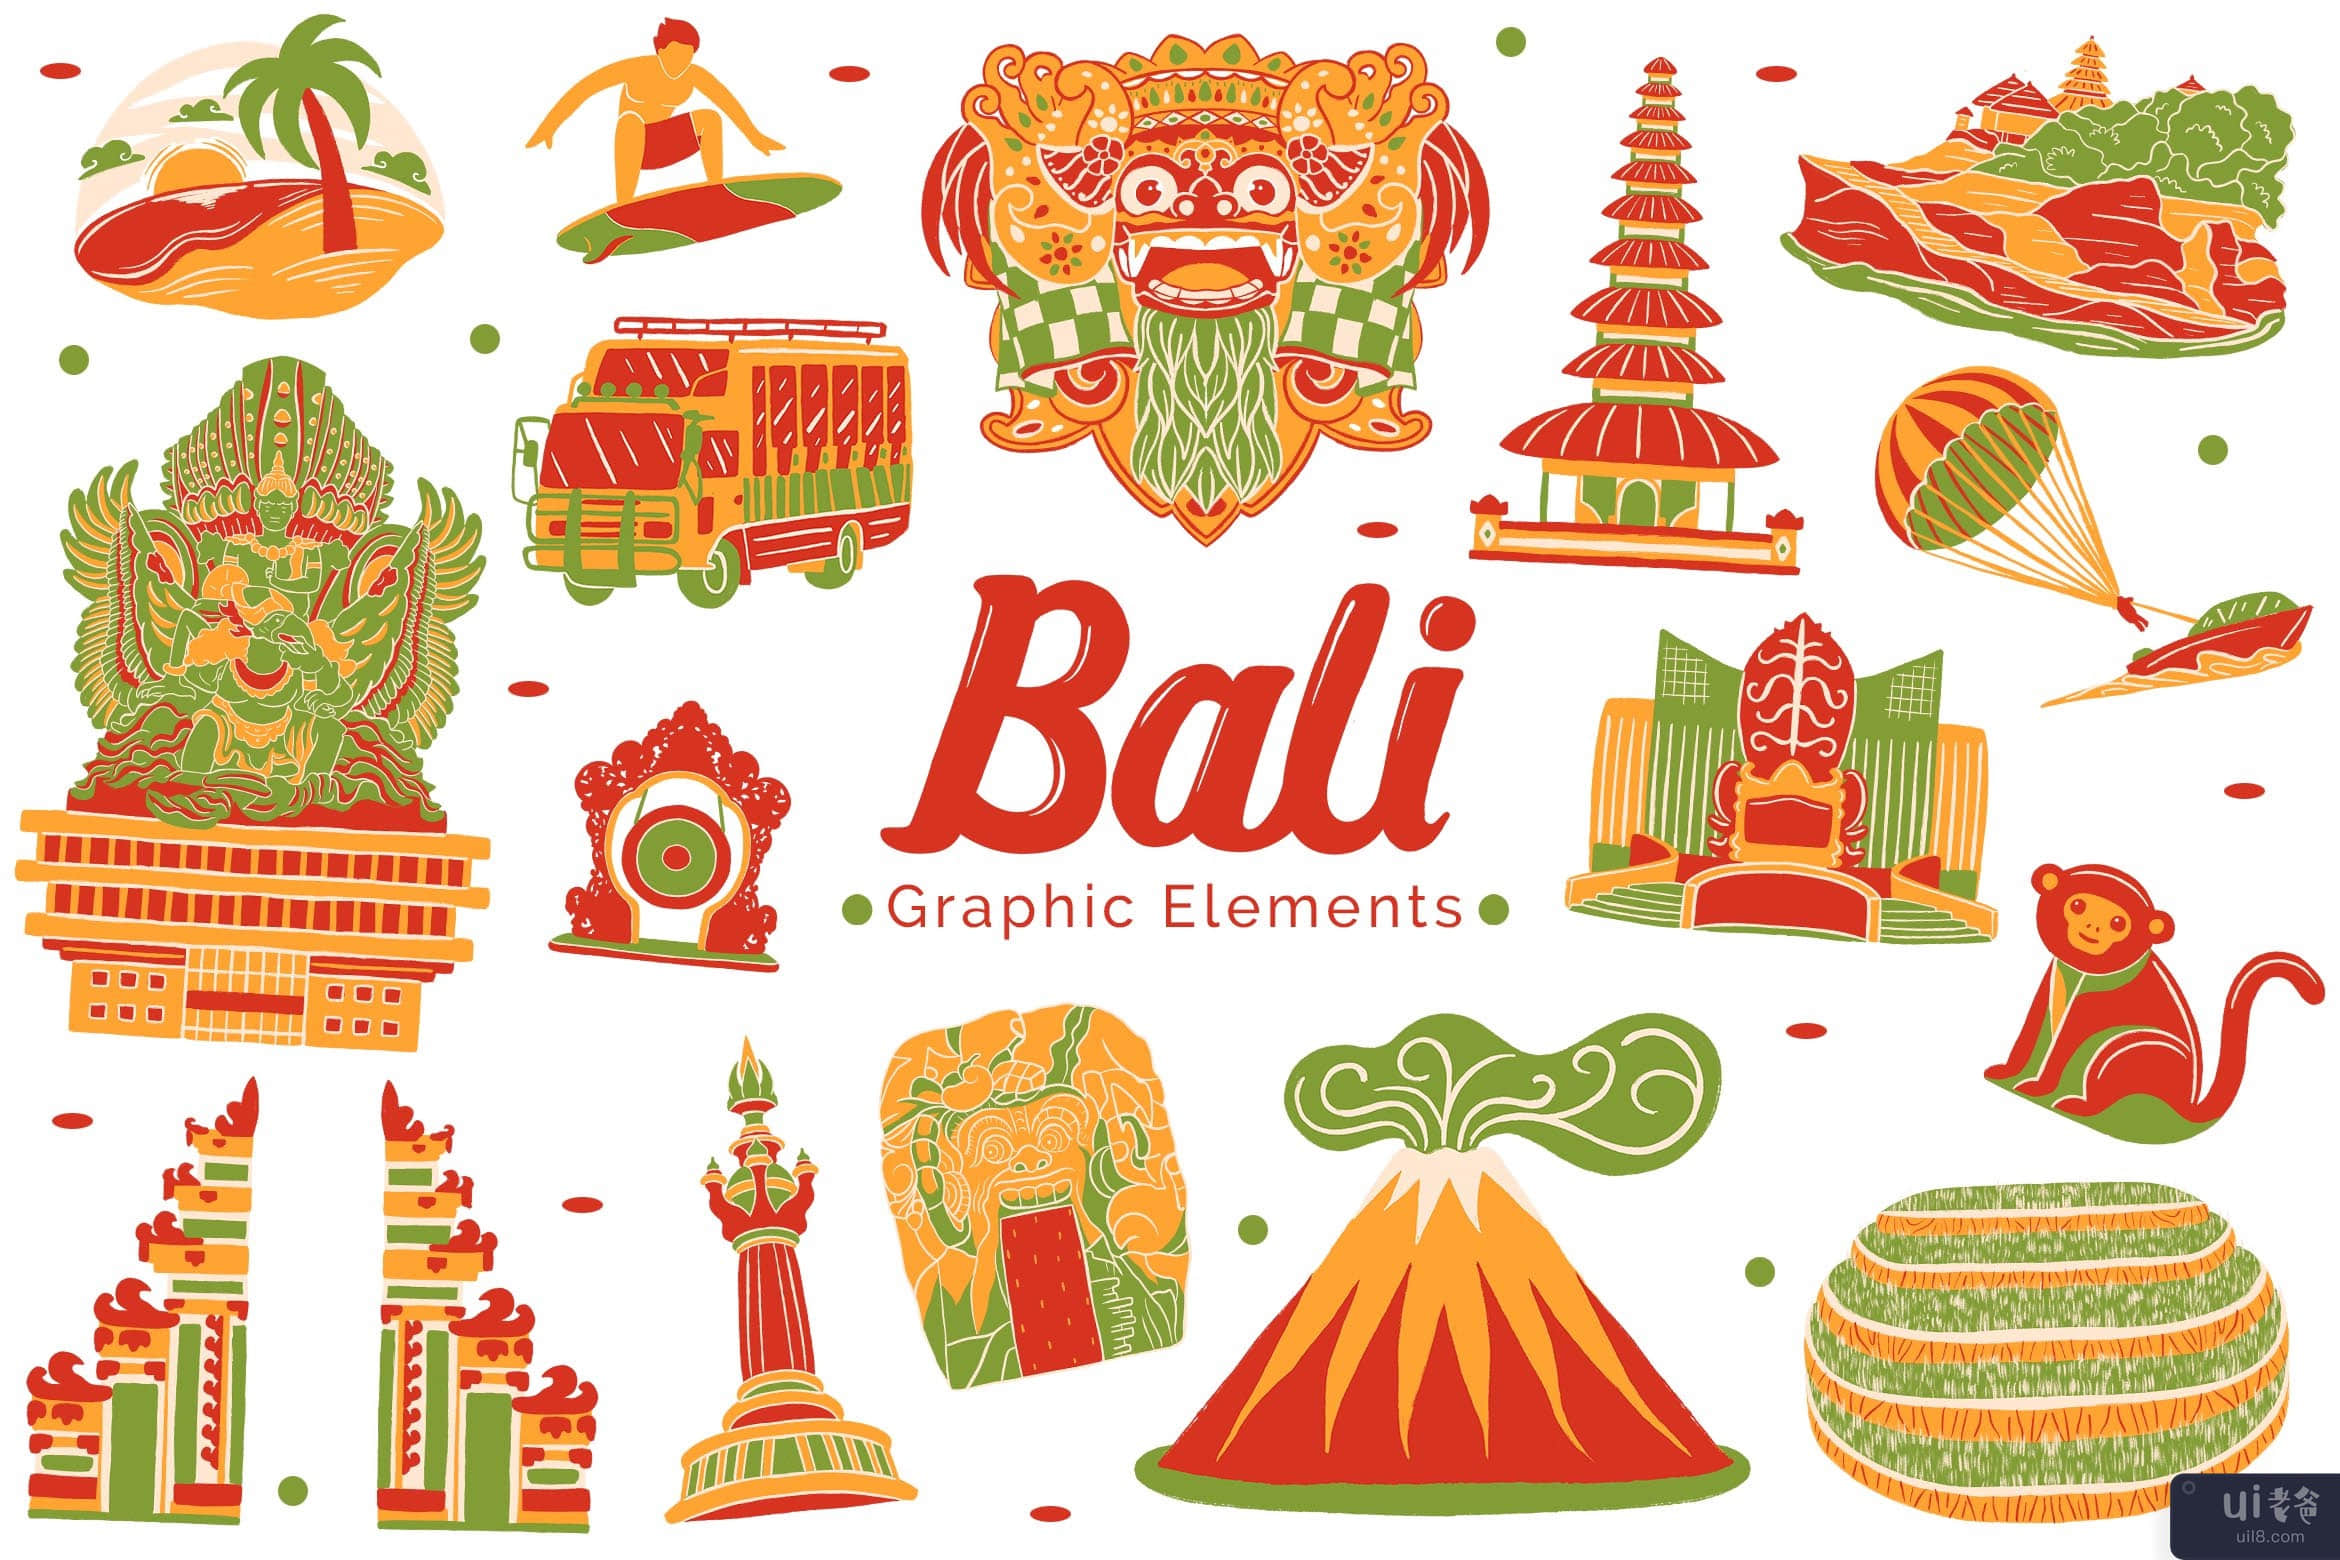 巴厘岛地标图形元素(Bali Landmark Graphic Elements)插图2